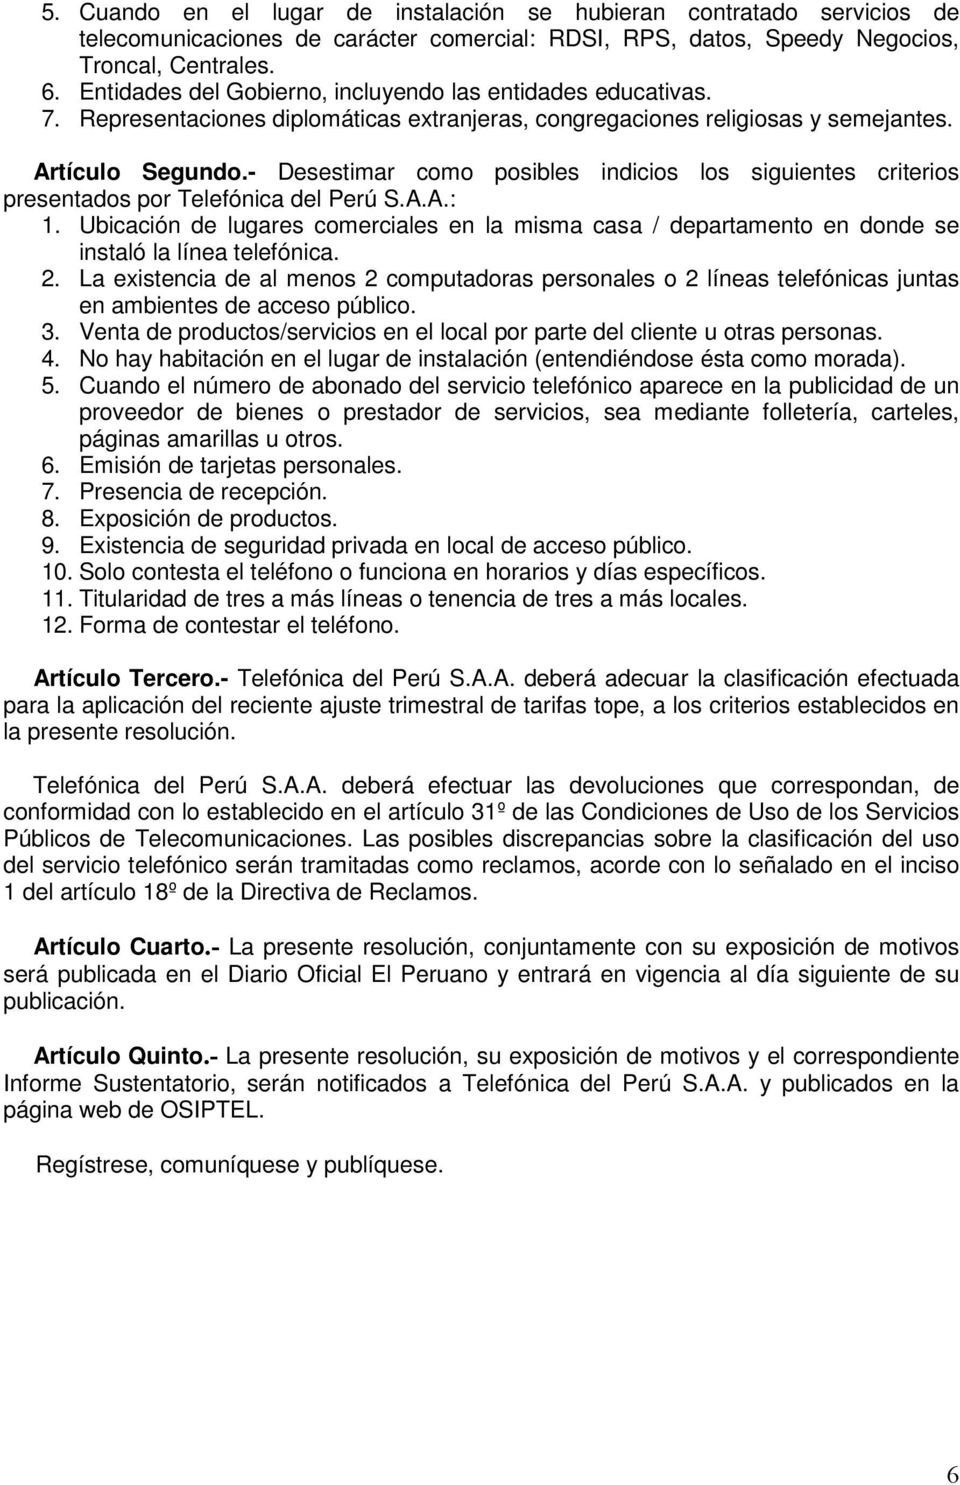 - Desestimar como posibles indicios los siguientes criterios presentados por Telefónica del Perú S.A.A.: 1.